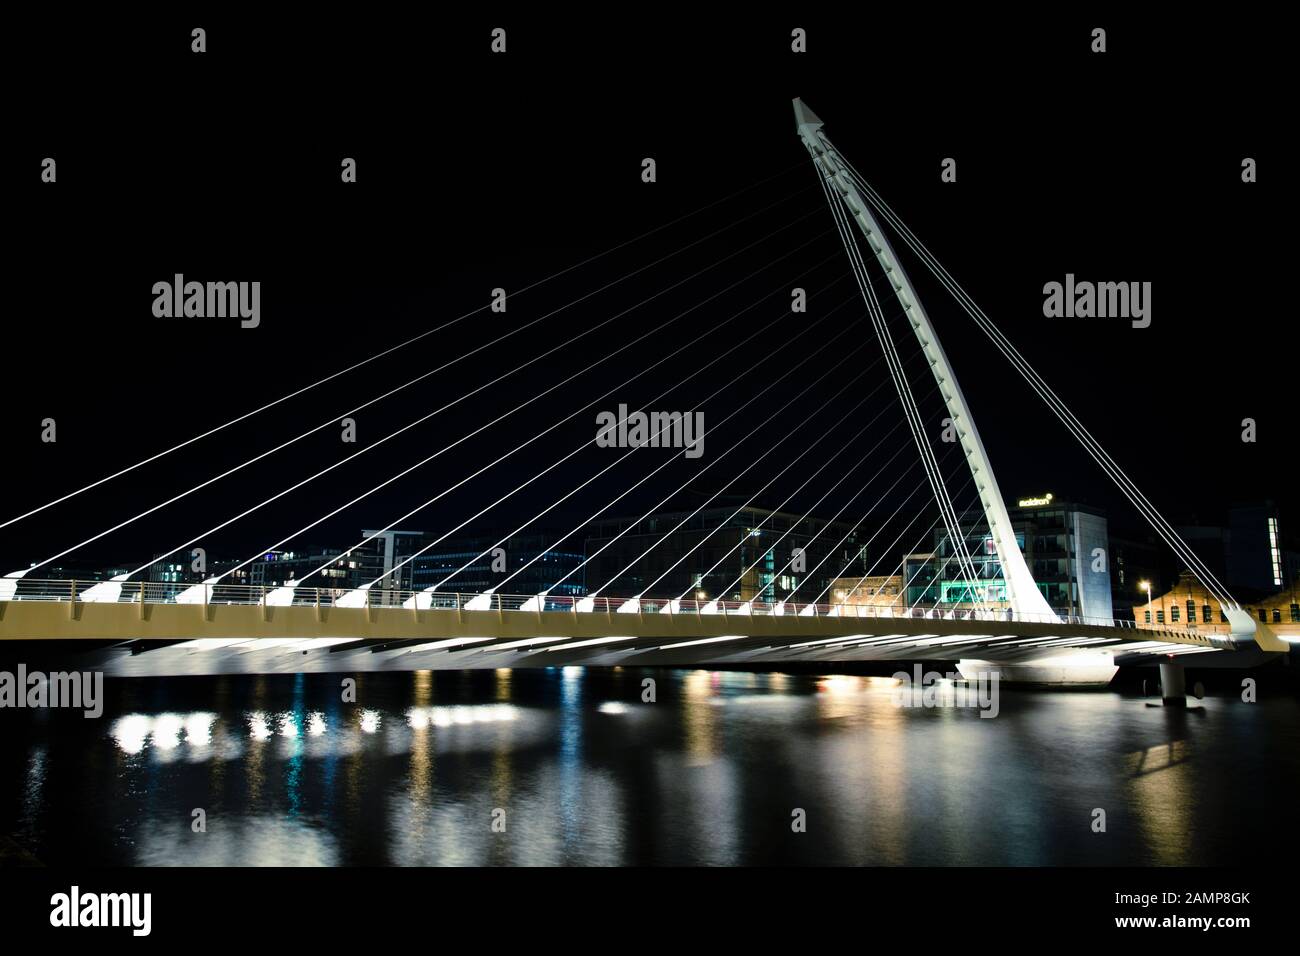 Dublino, Irlanda - 18 agosto 2012: Notte tempo lento esposizione colpo del ponte Samuel Beckett sul fiume Liffey. Foto Stock